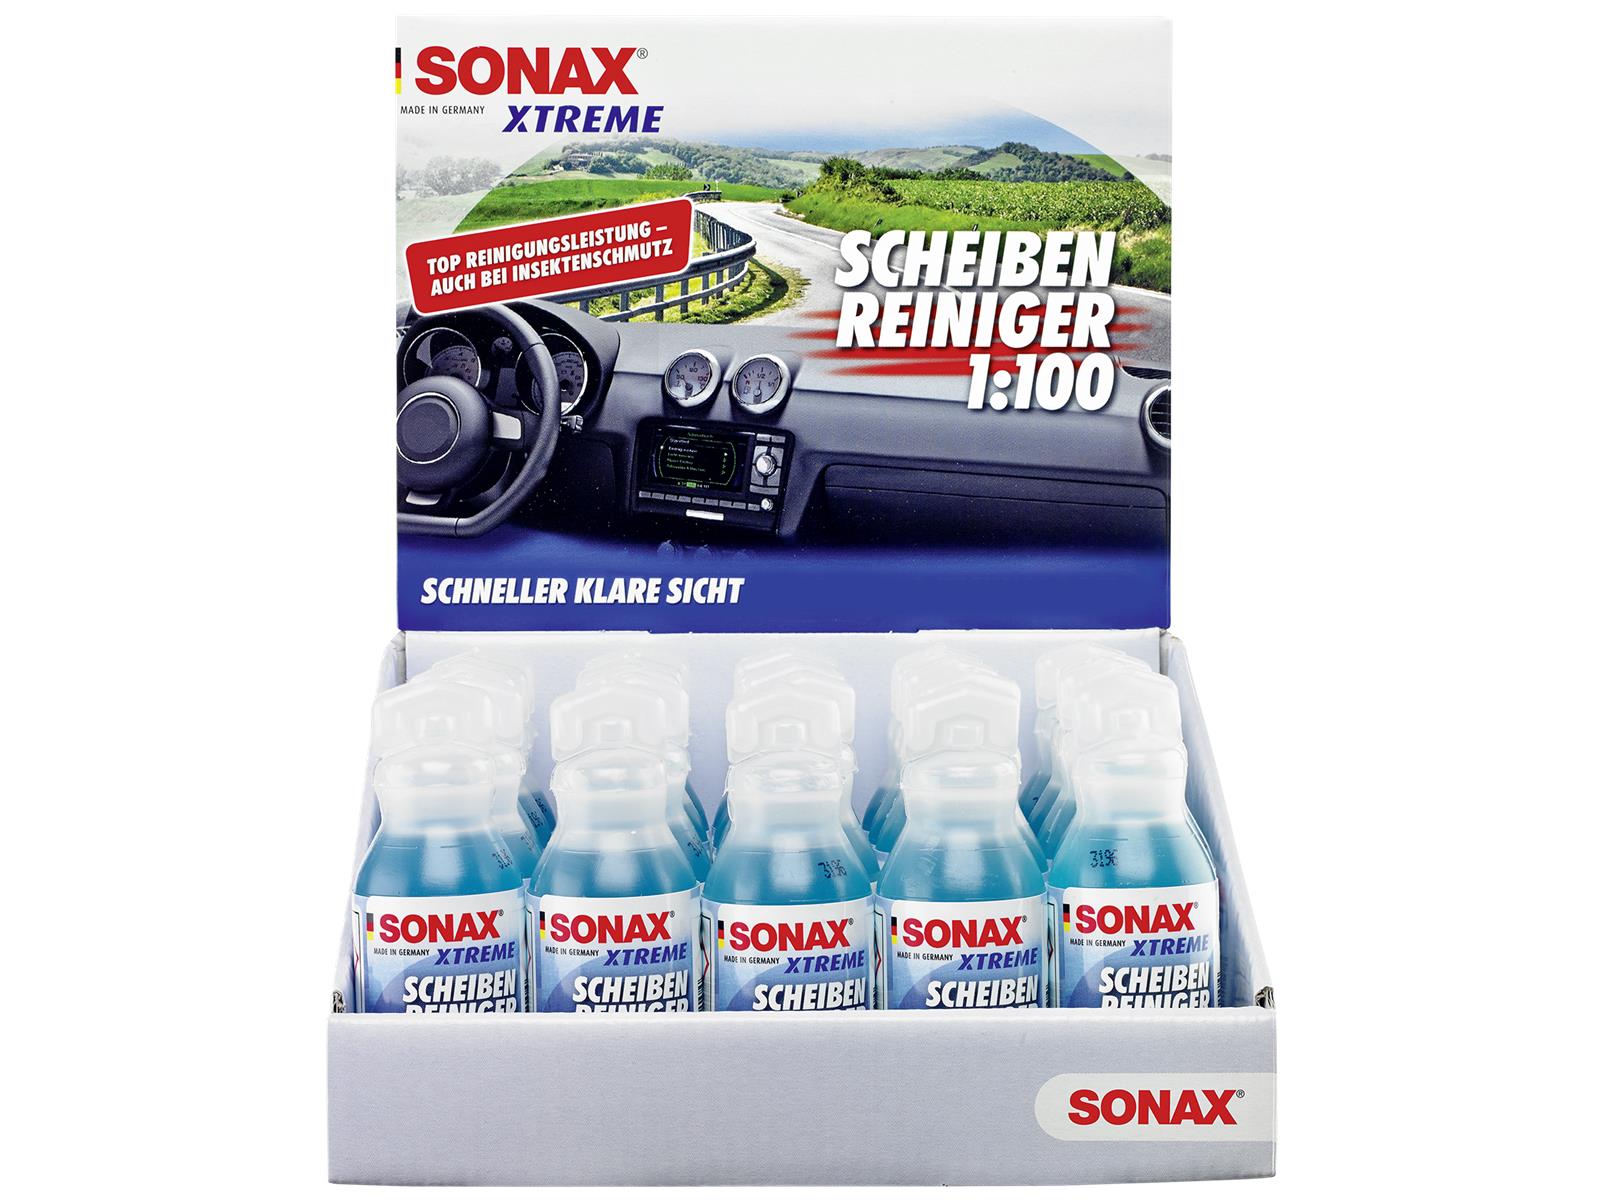 SONAX 02711000 XTREME ScheibenReiniger 1:100 Eine Flasche 25 ml